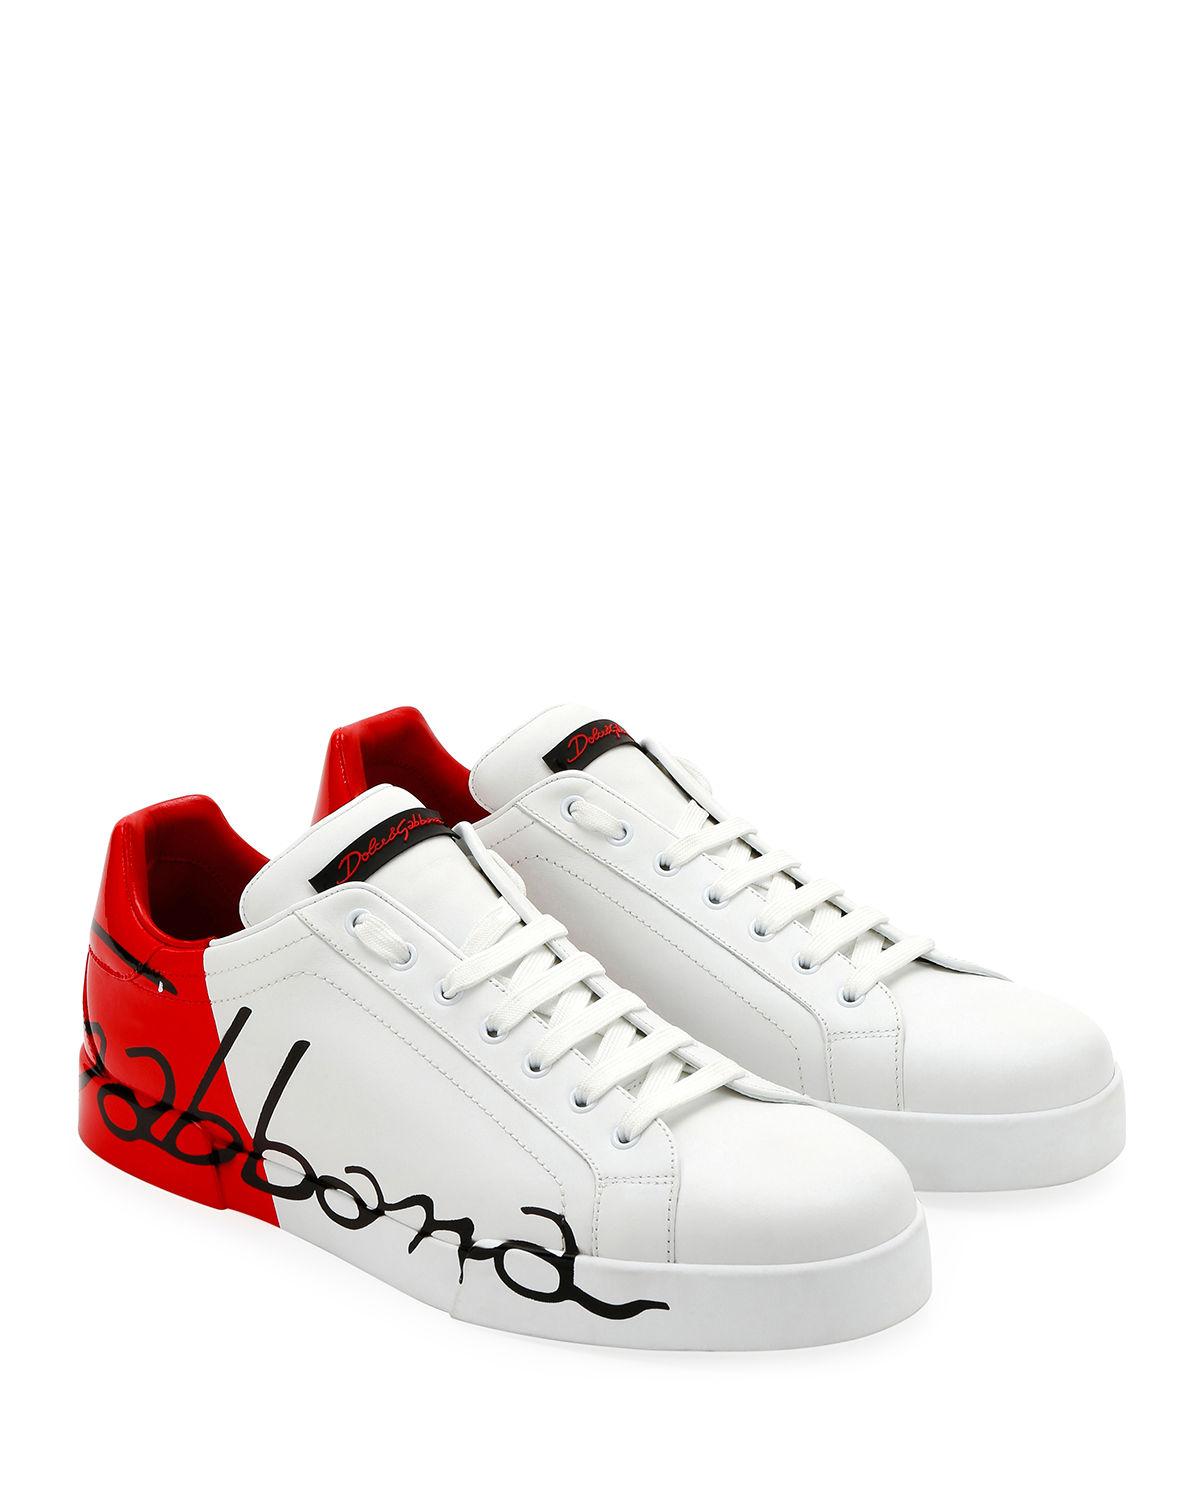 Lyst - Dolce & Gabbana Men's Signature Portofino Logo Sneakers in White ...